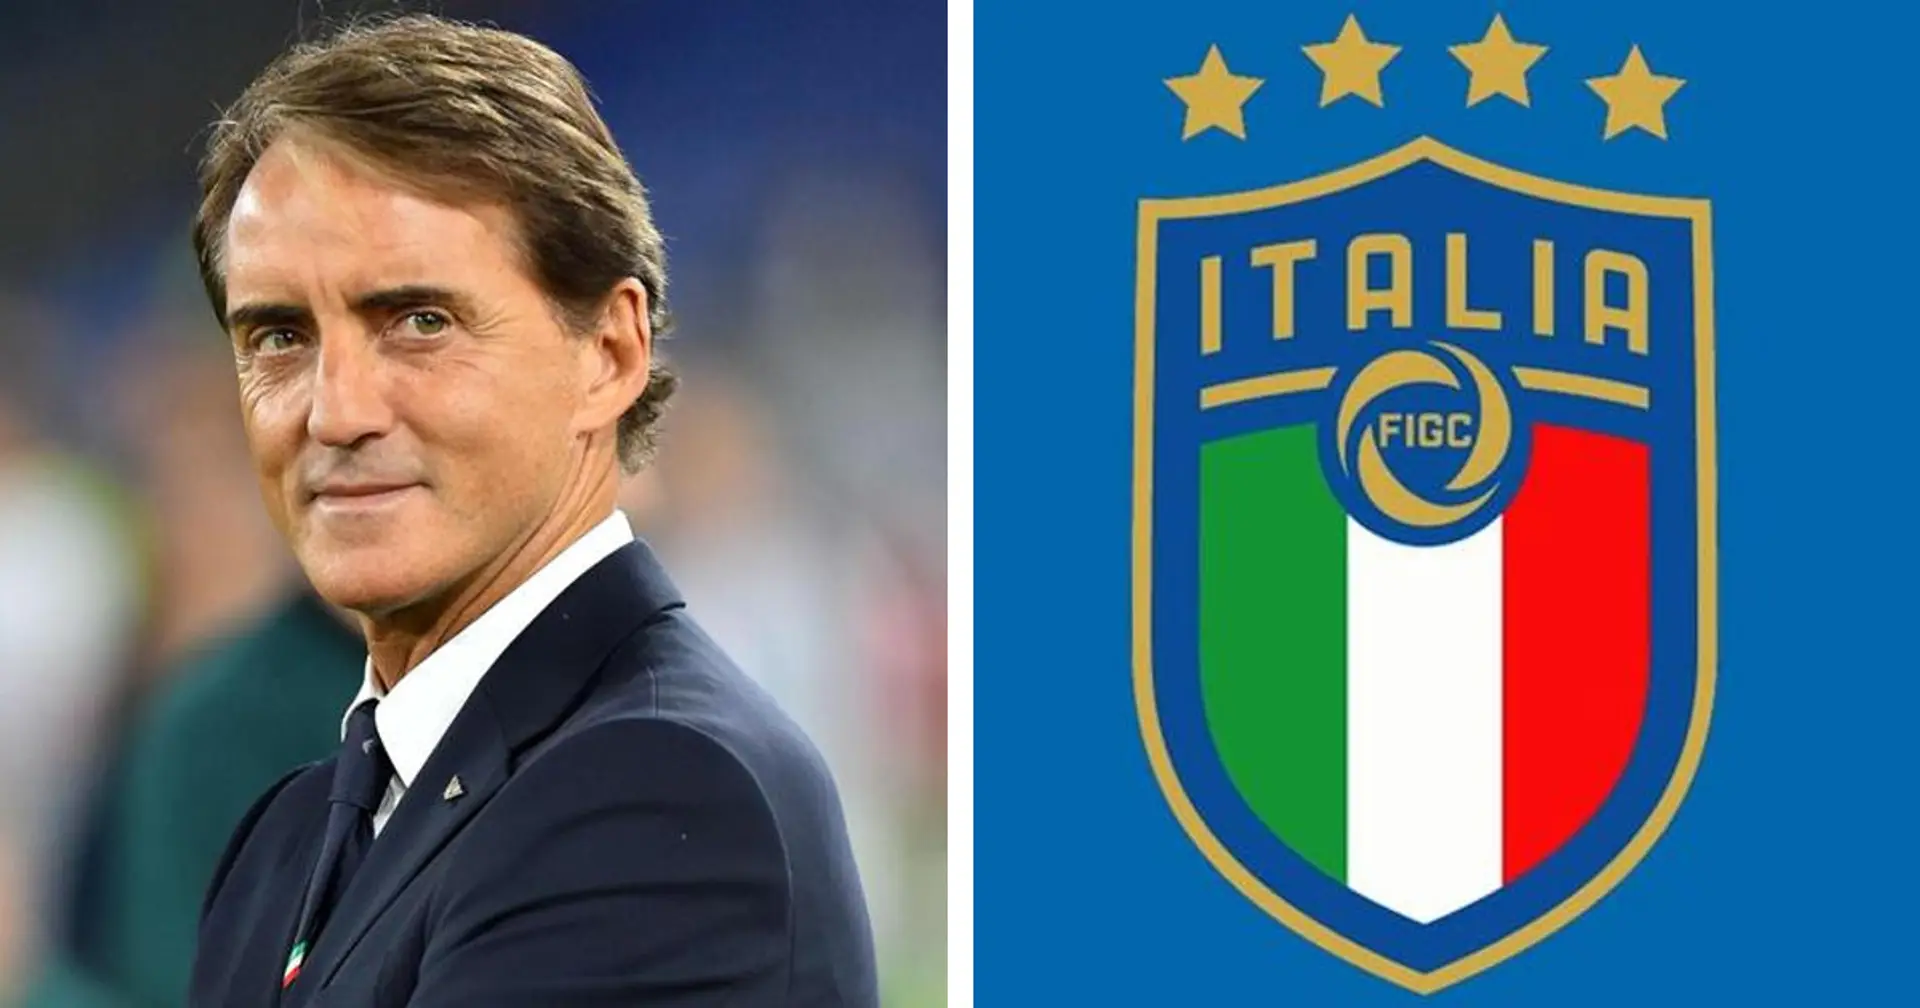 UFFICIALE| Roberto Mancini si dimette da CT dell'Italia: la nota della FIGC